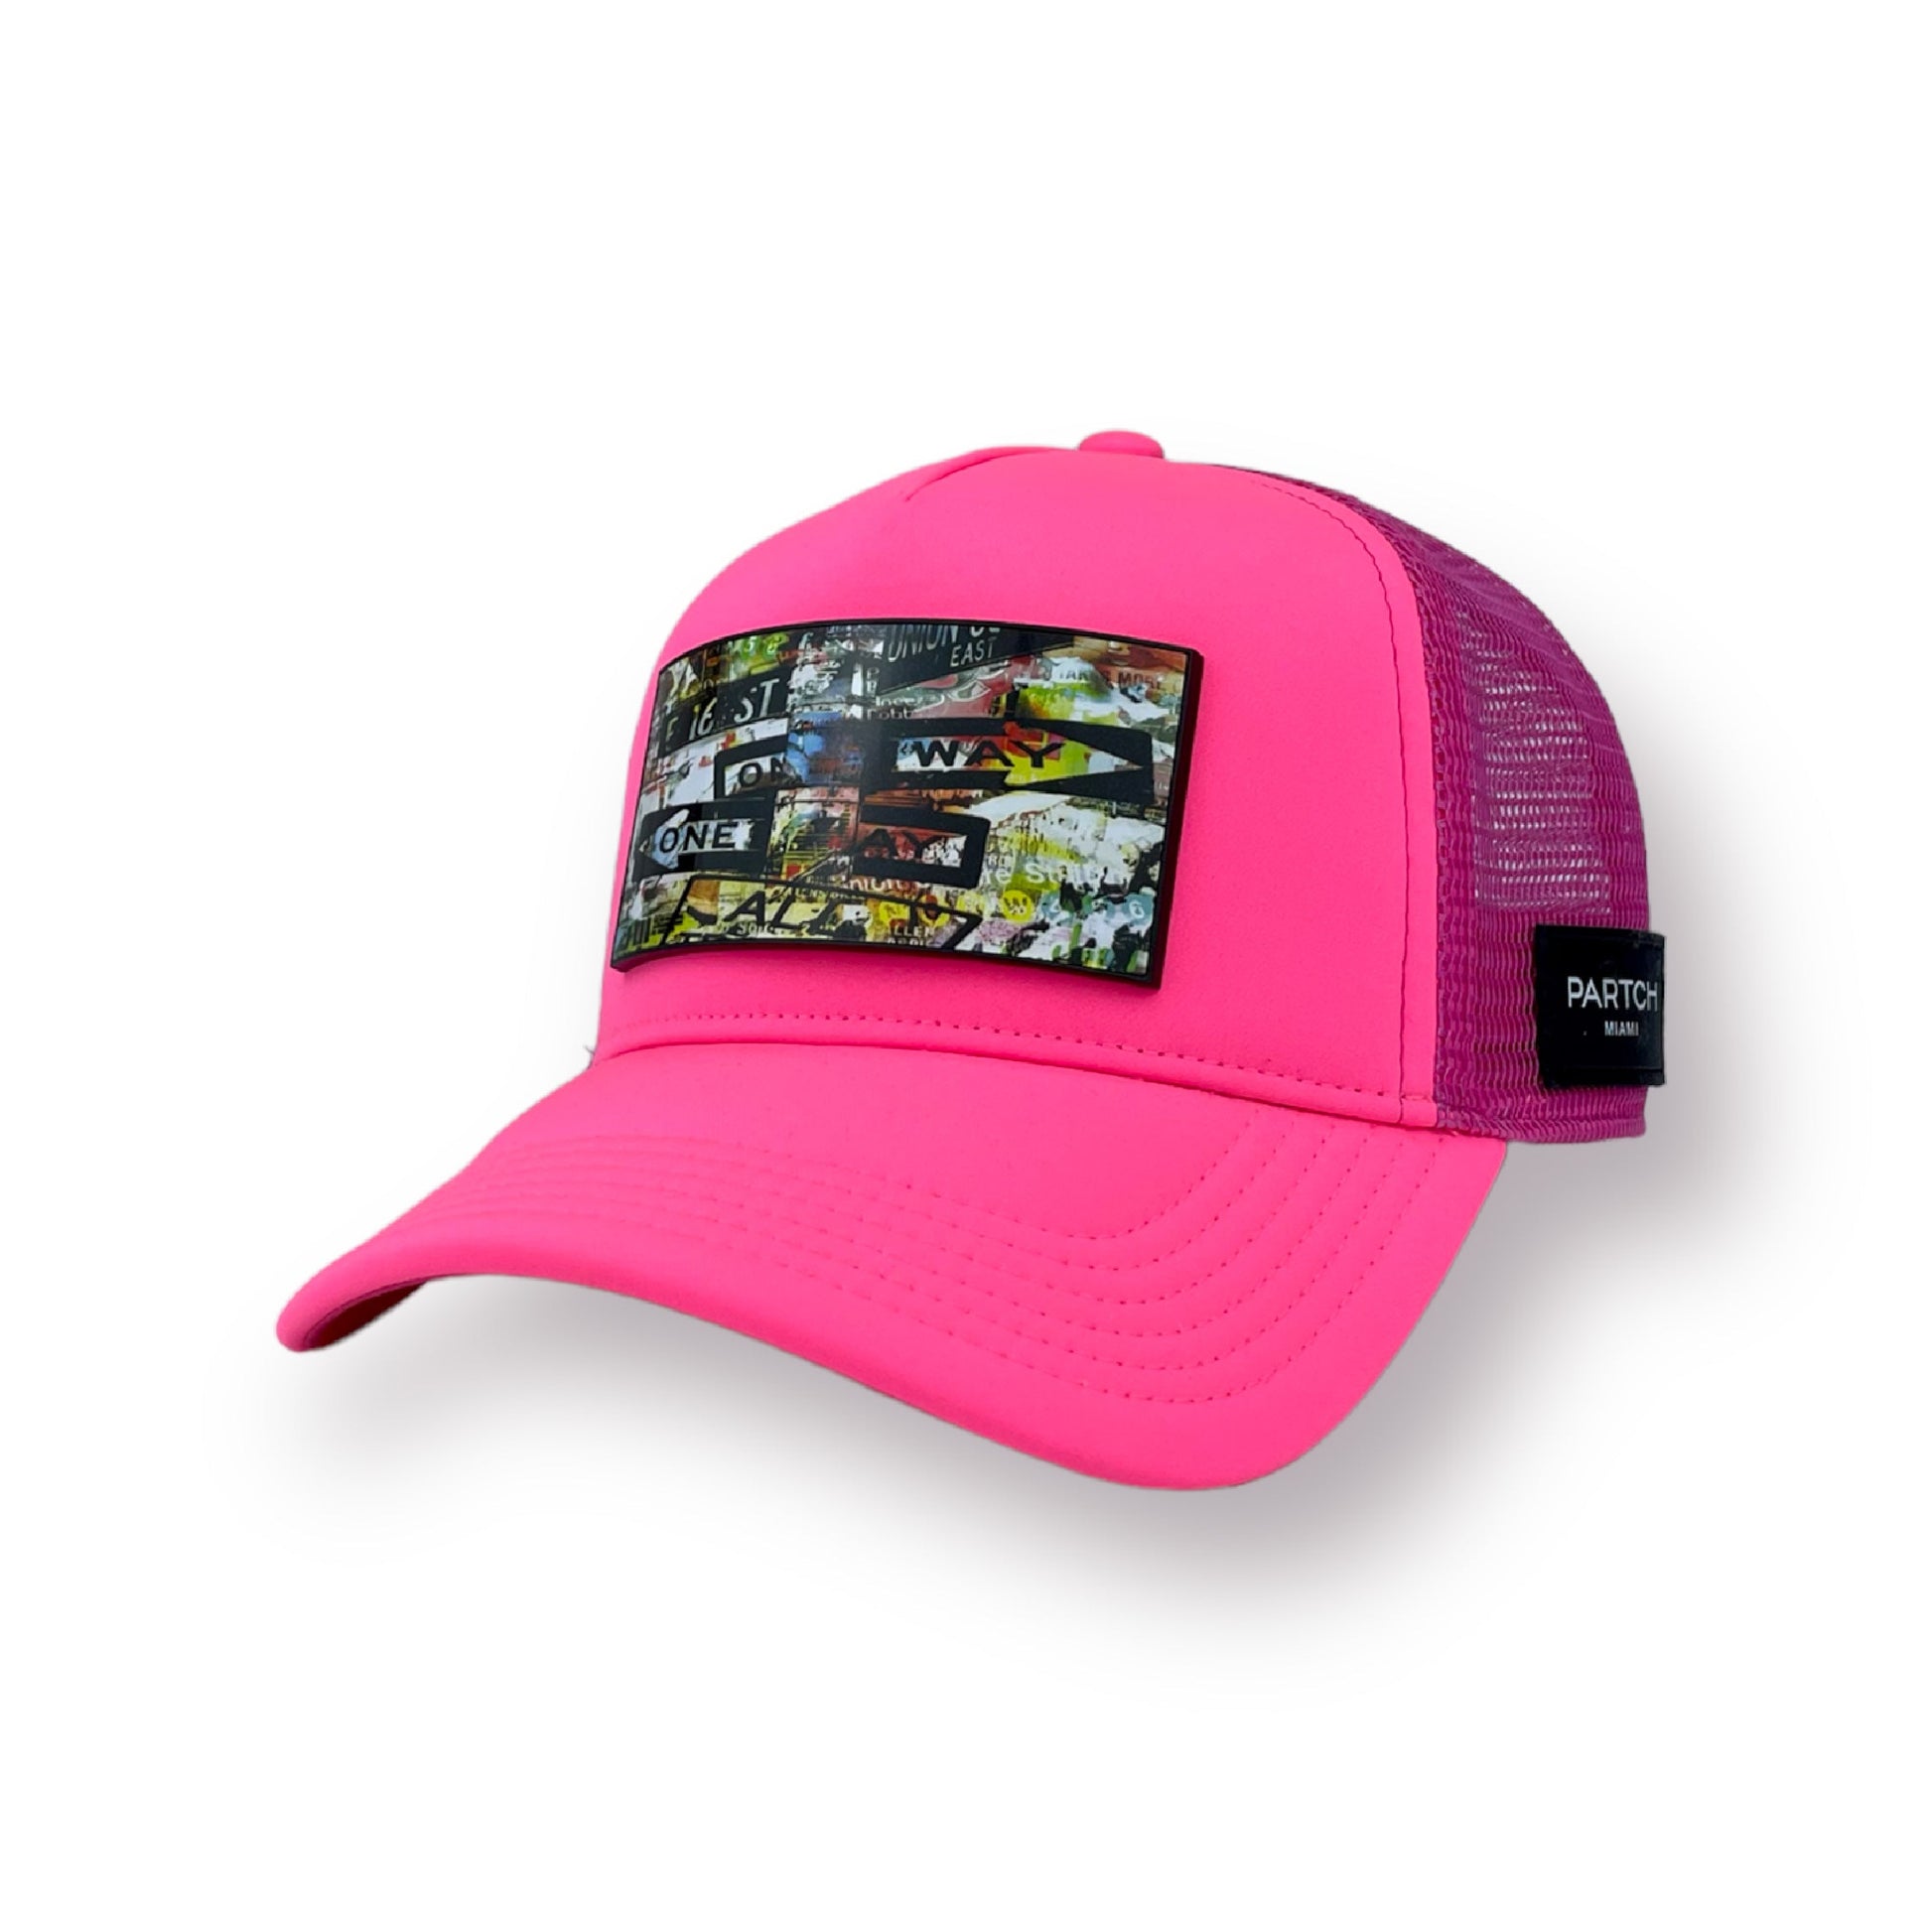 PARTCH Unixvi trucker hat in pink